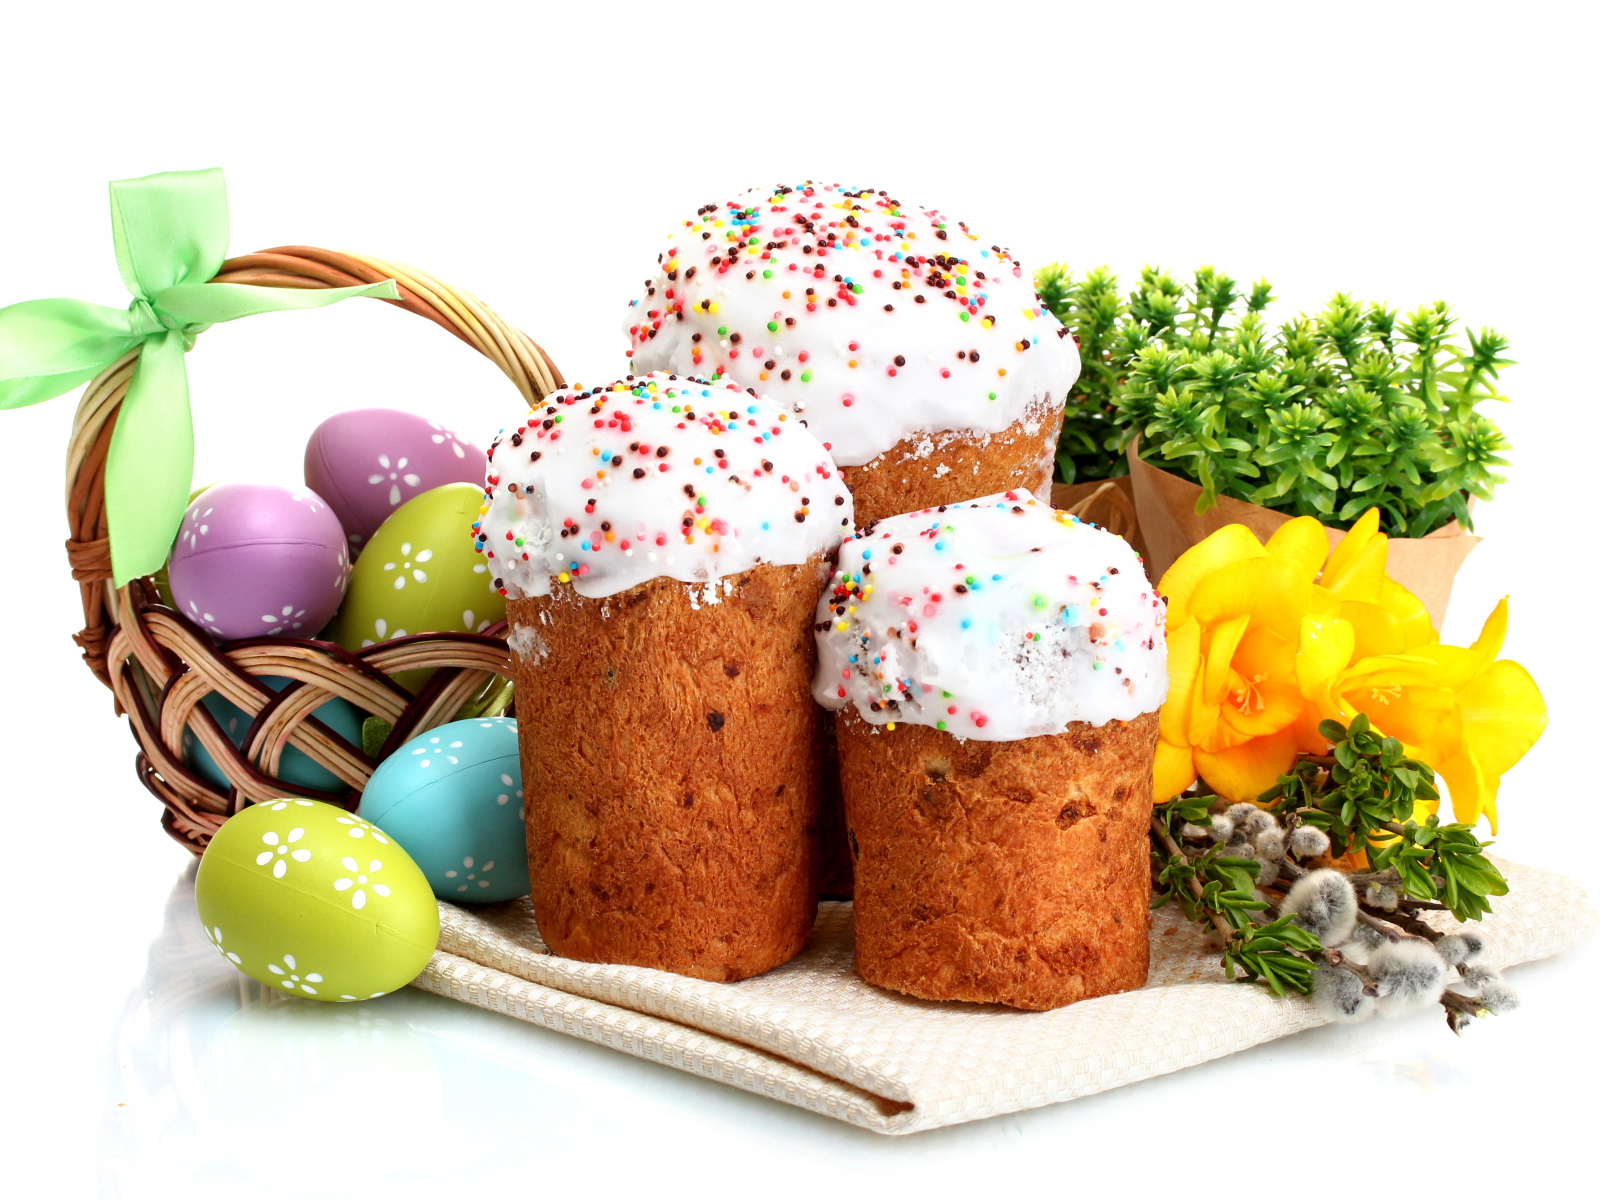 Три сладких кулича на белом фоне с цветами и крашеными яйцами к празднику Пасха